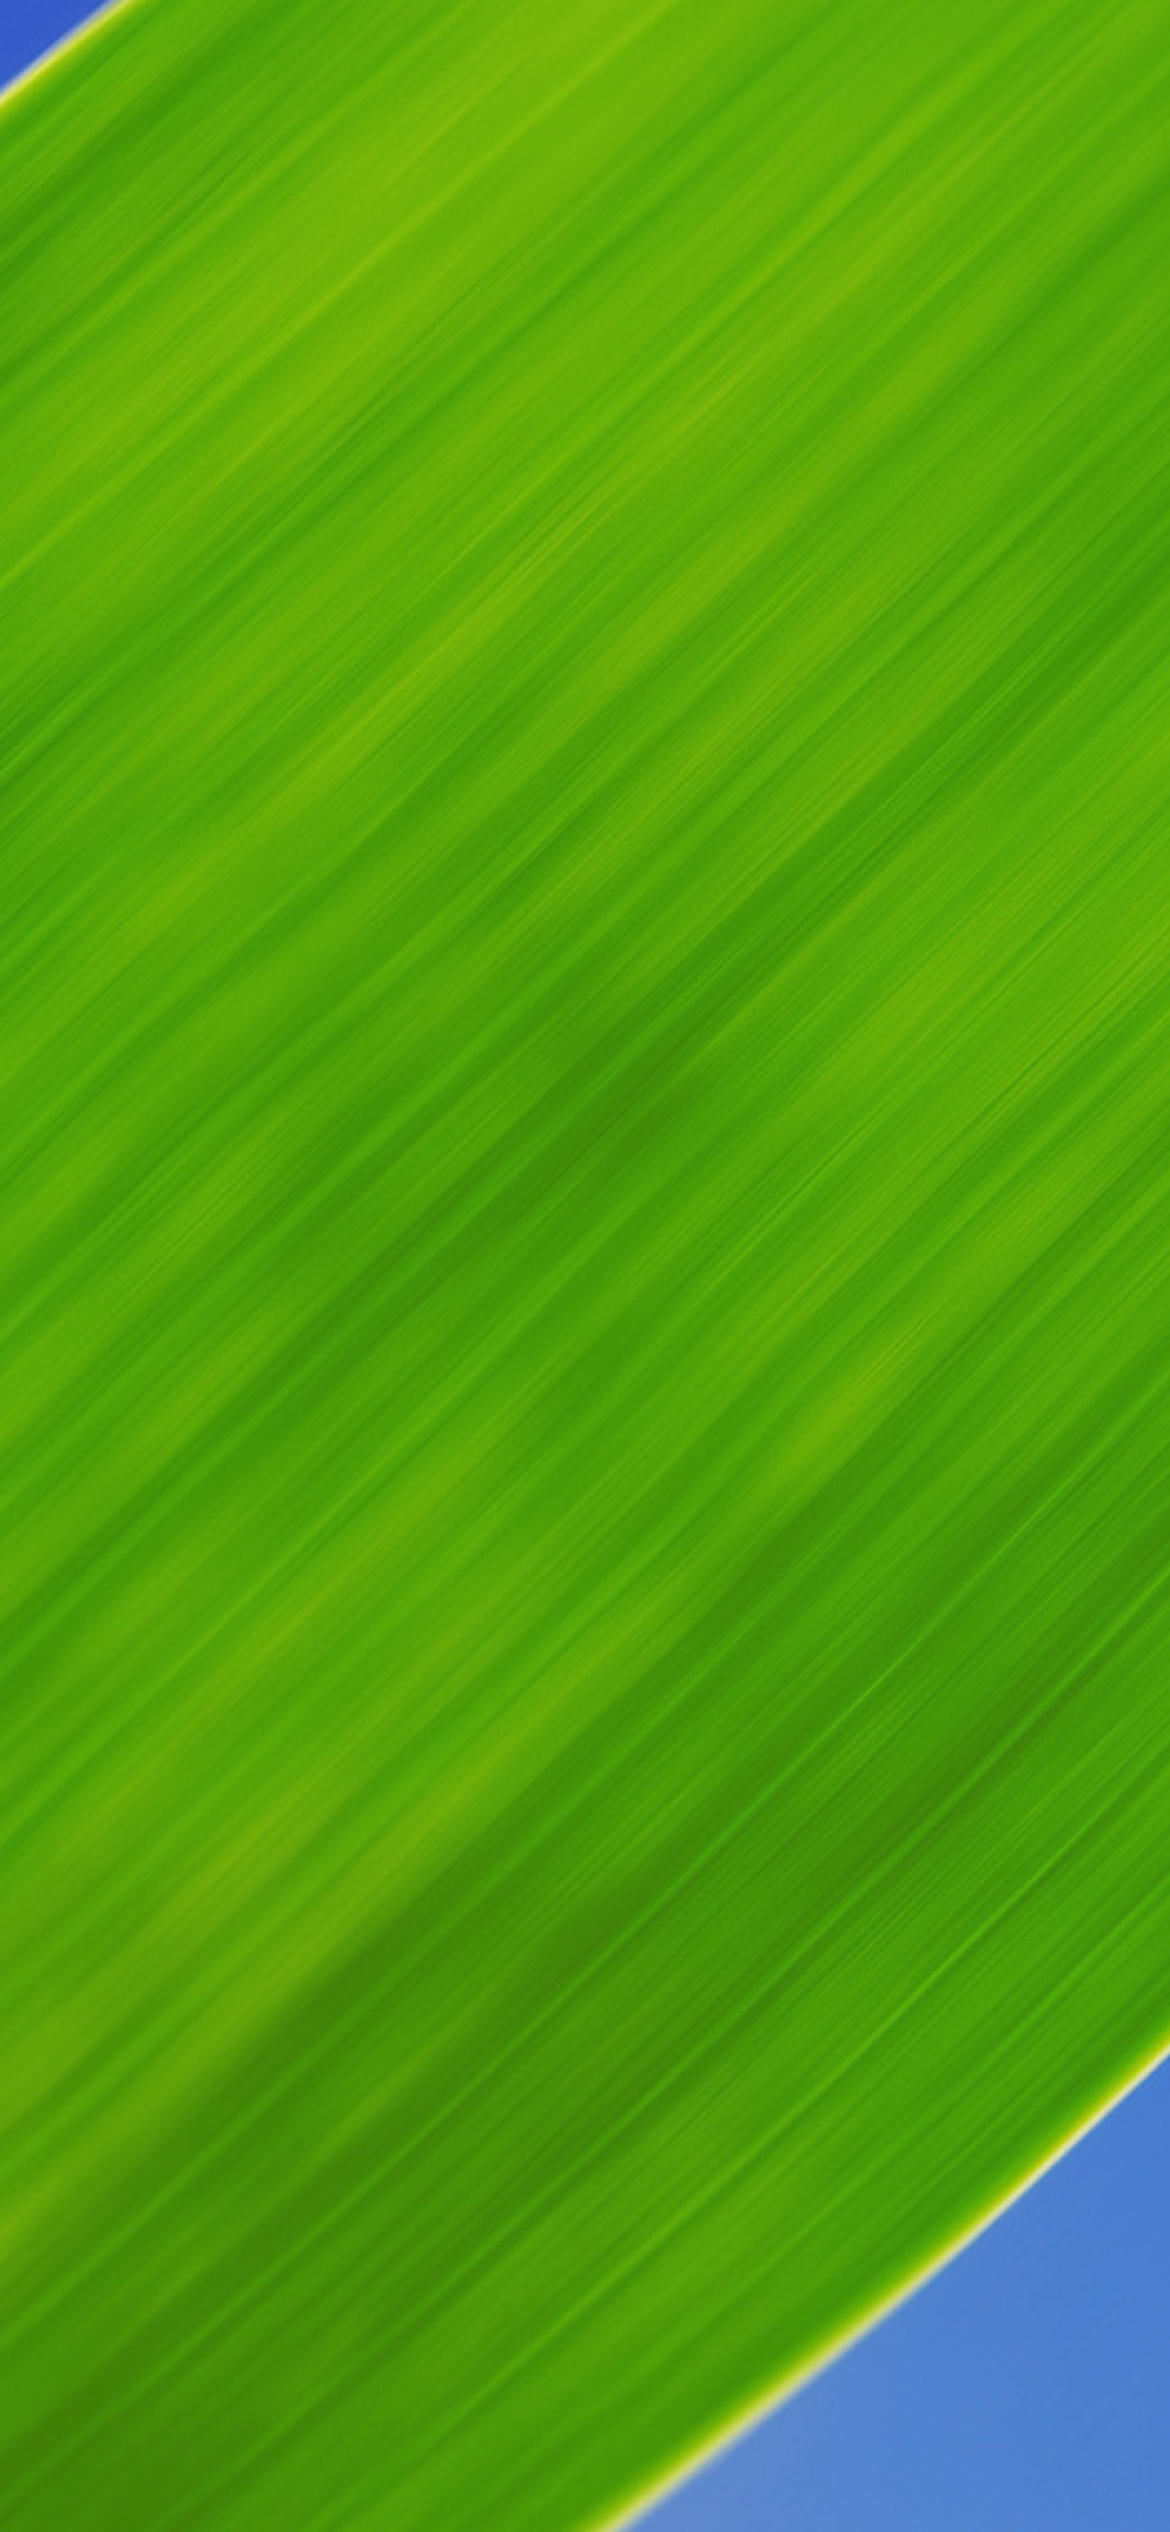 Green Grass Close Up wallpaper 1170x2532